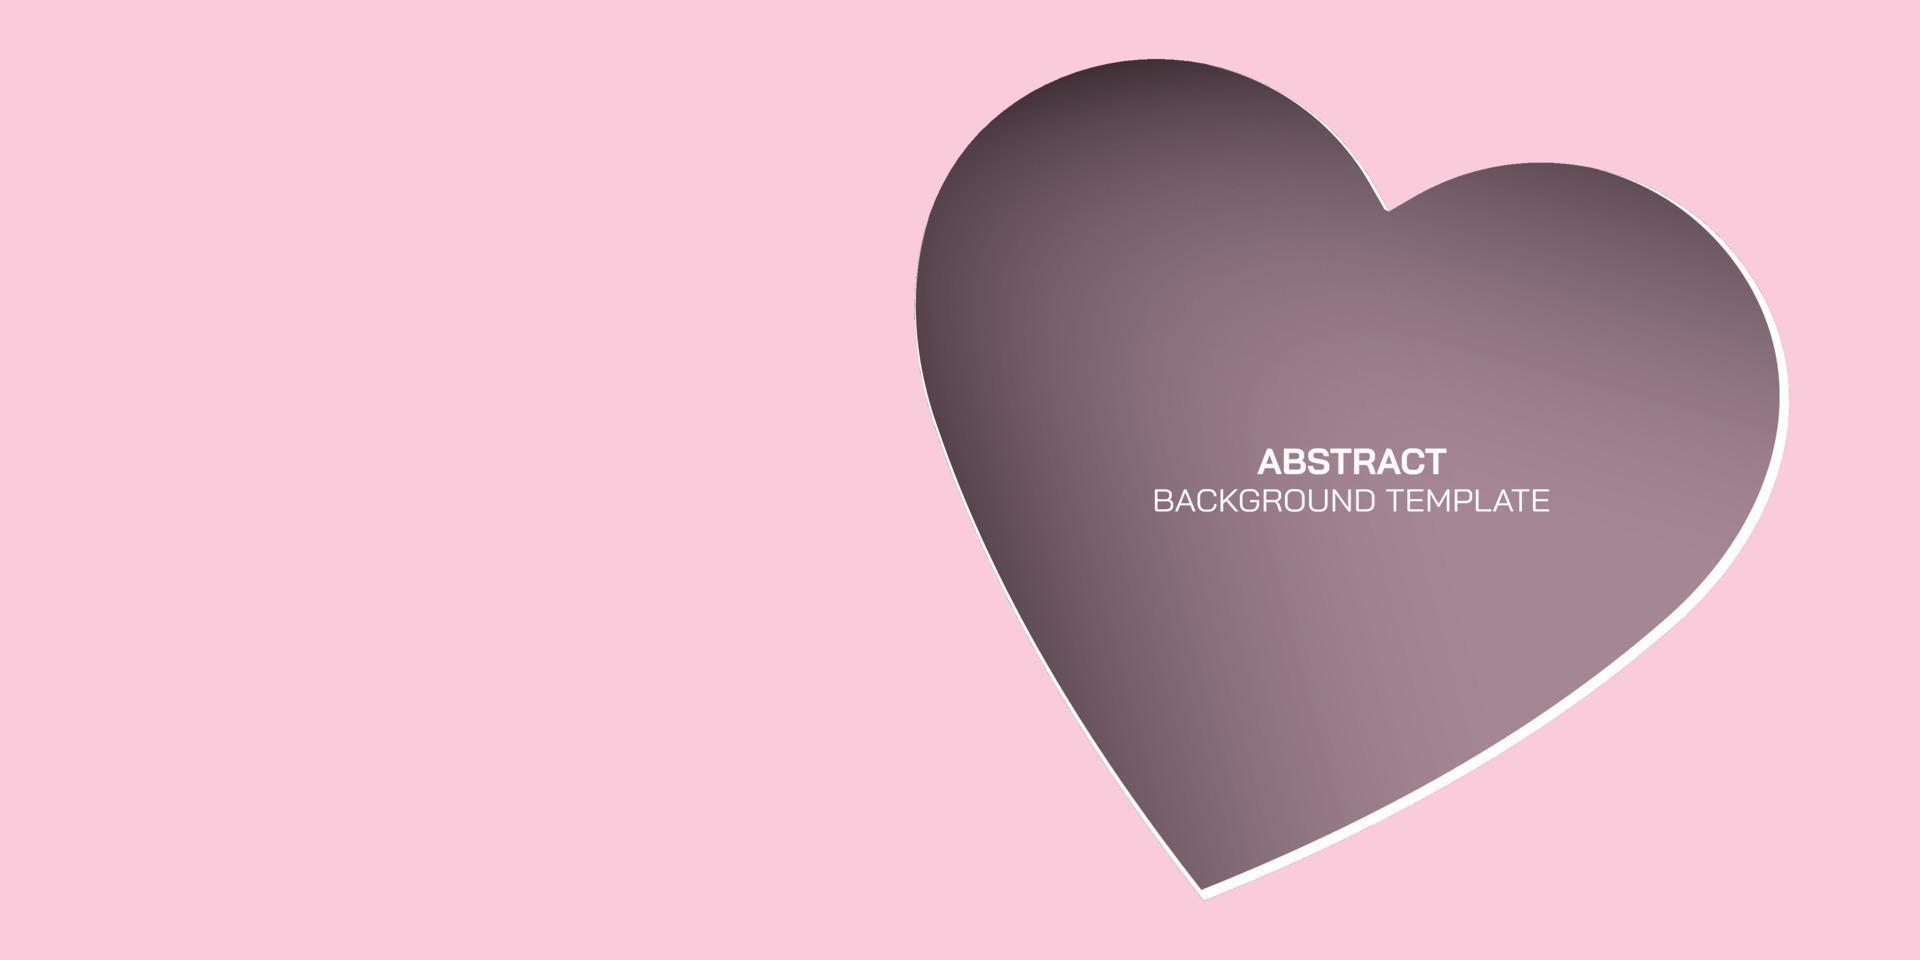 papel de quadro de coração abstrato de 3 dimensões cortado em fundo rosa com espaço em branco. vetor